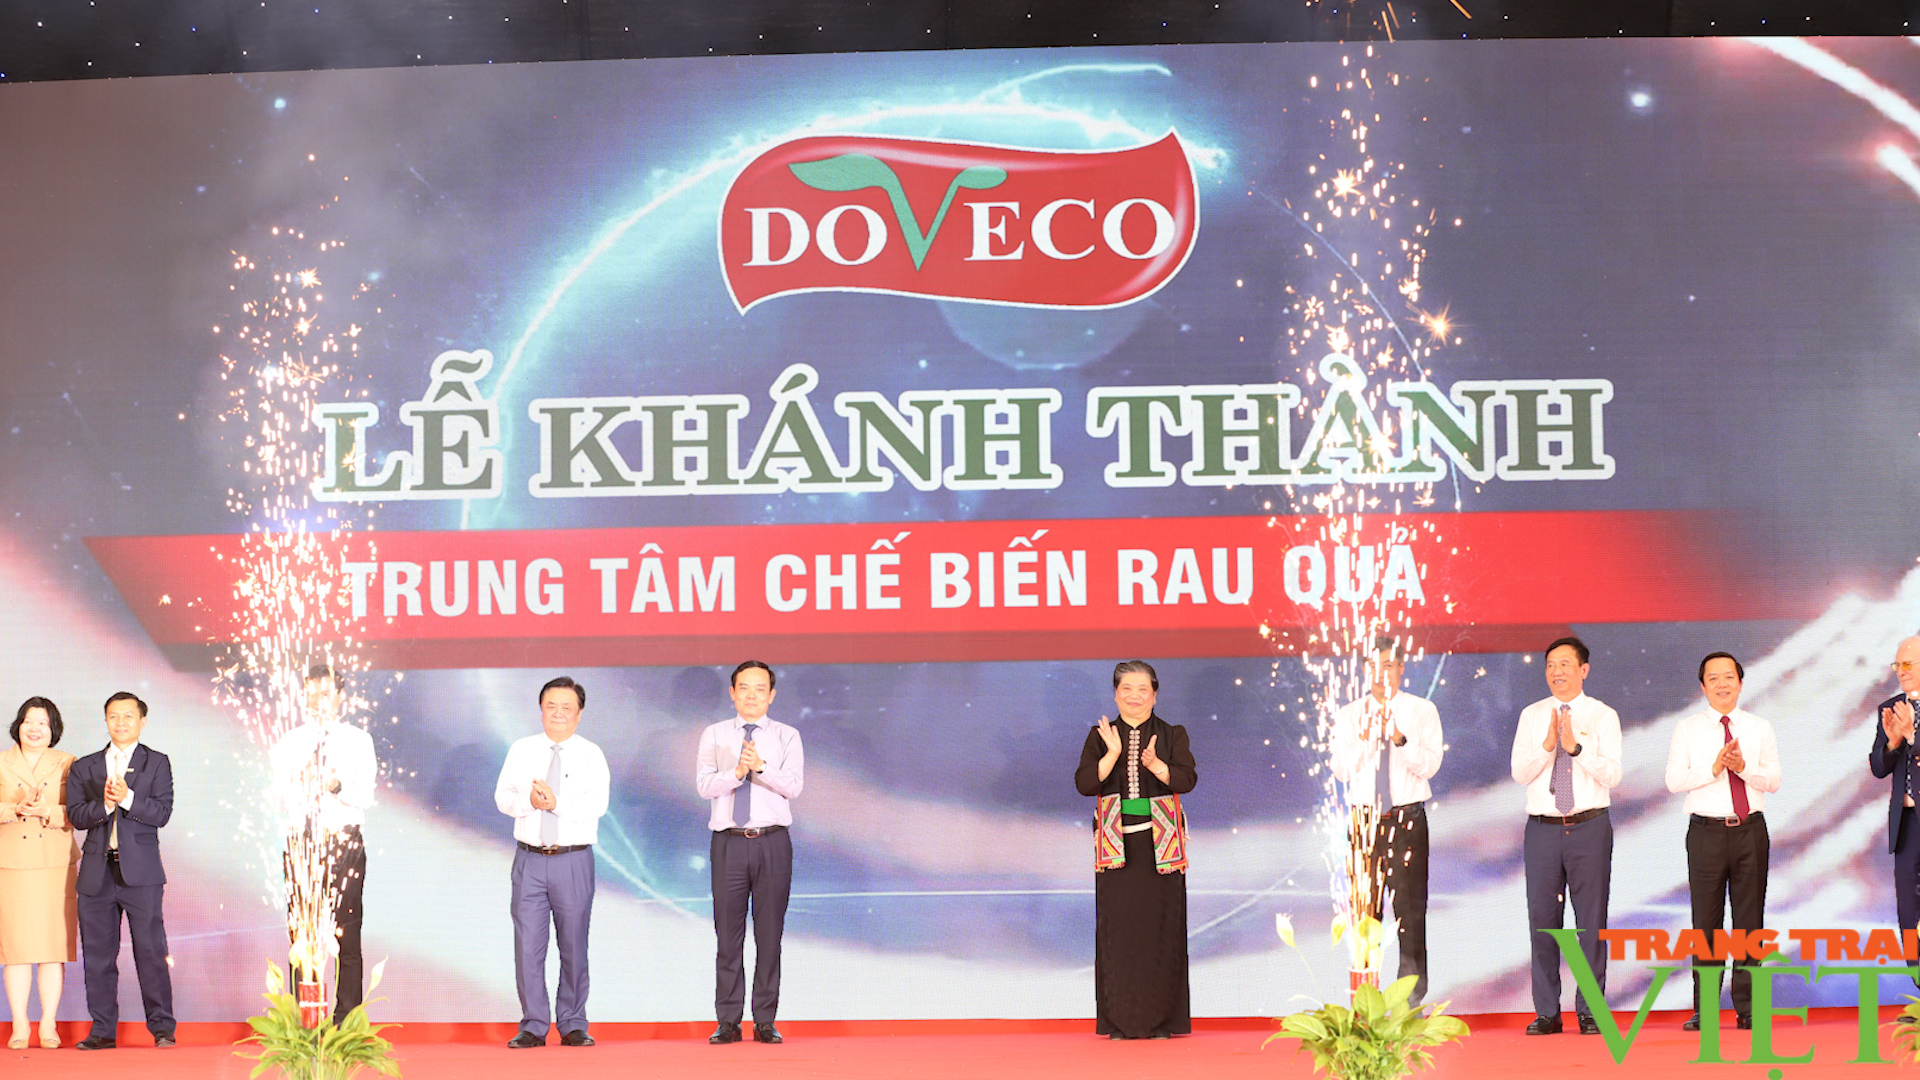  Doveco Sơn La: Giúp nông dân tiêu thụ nông sản - Ảnh 1.